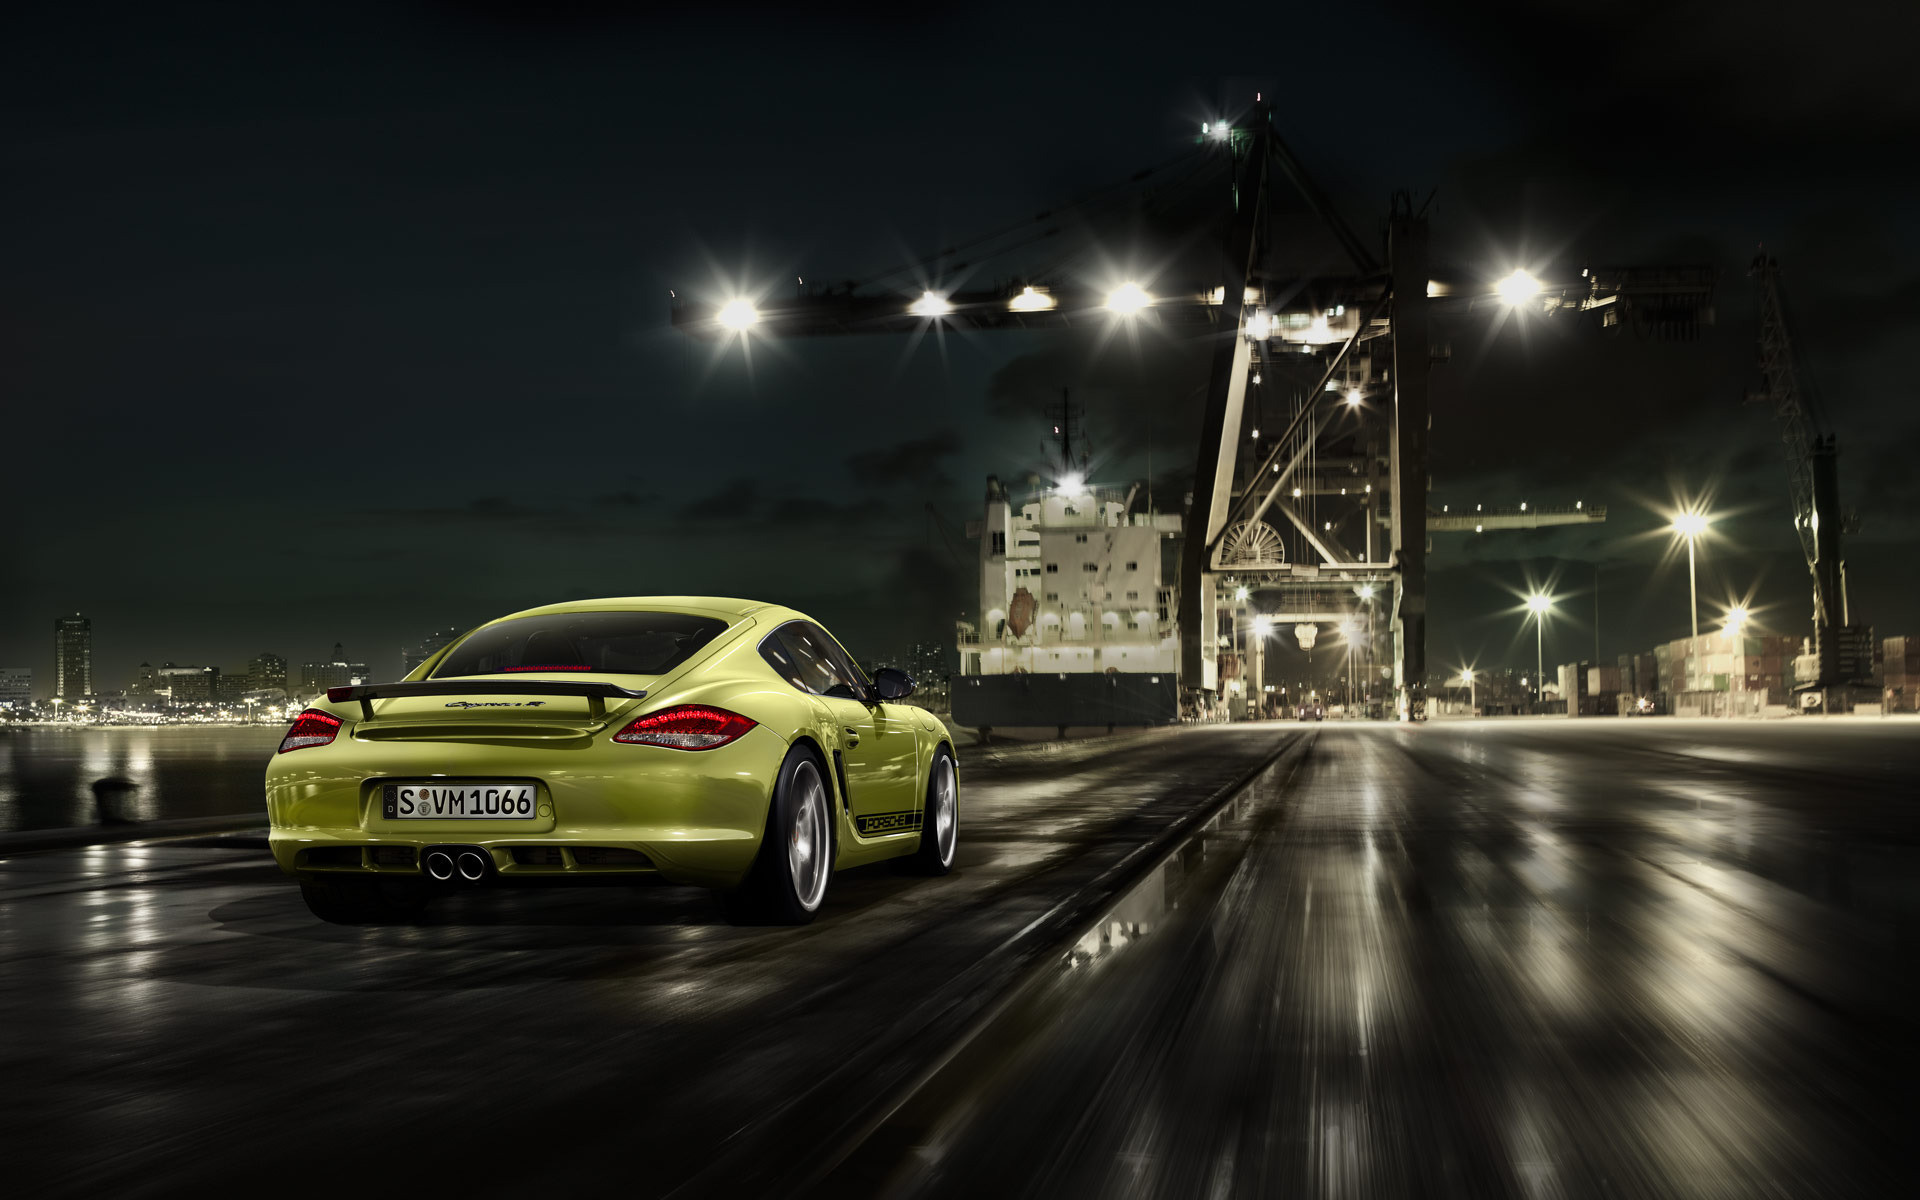 1920x1200 Porsche HD Wallpaper | Background Image |  | ID:257680 - Wallpaper  Abyss